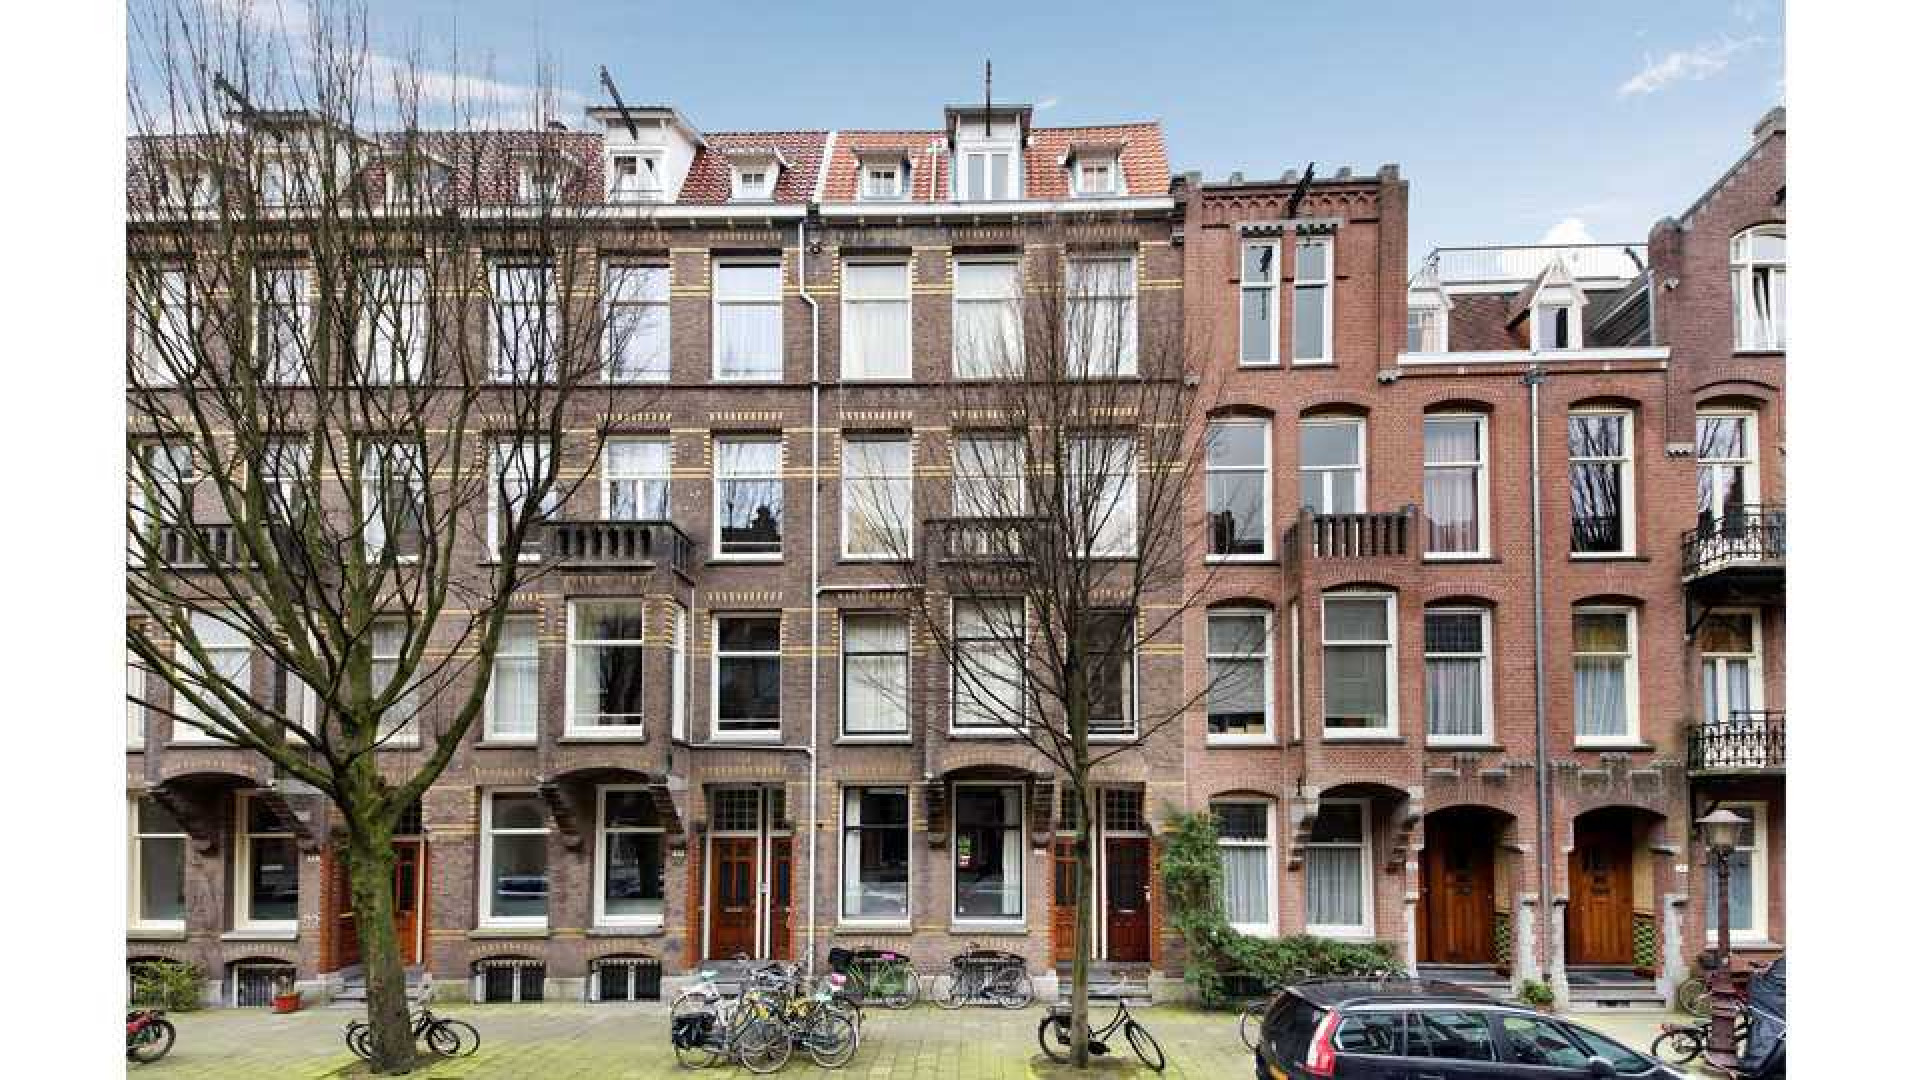 Mode koningin Sheila de Vries verkoopt haar driedubbele bovenhuis in Amsterdam Zuid met vette winst. Zie foto's 1